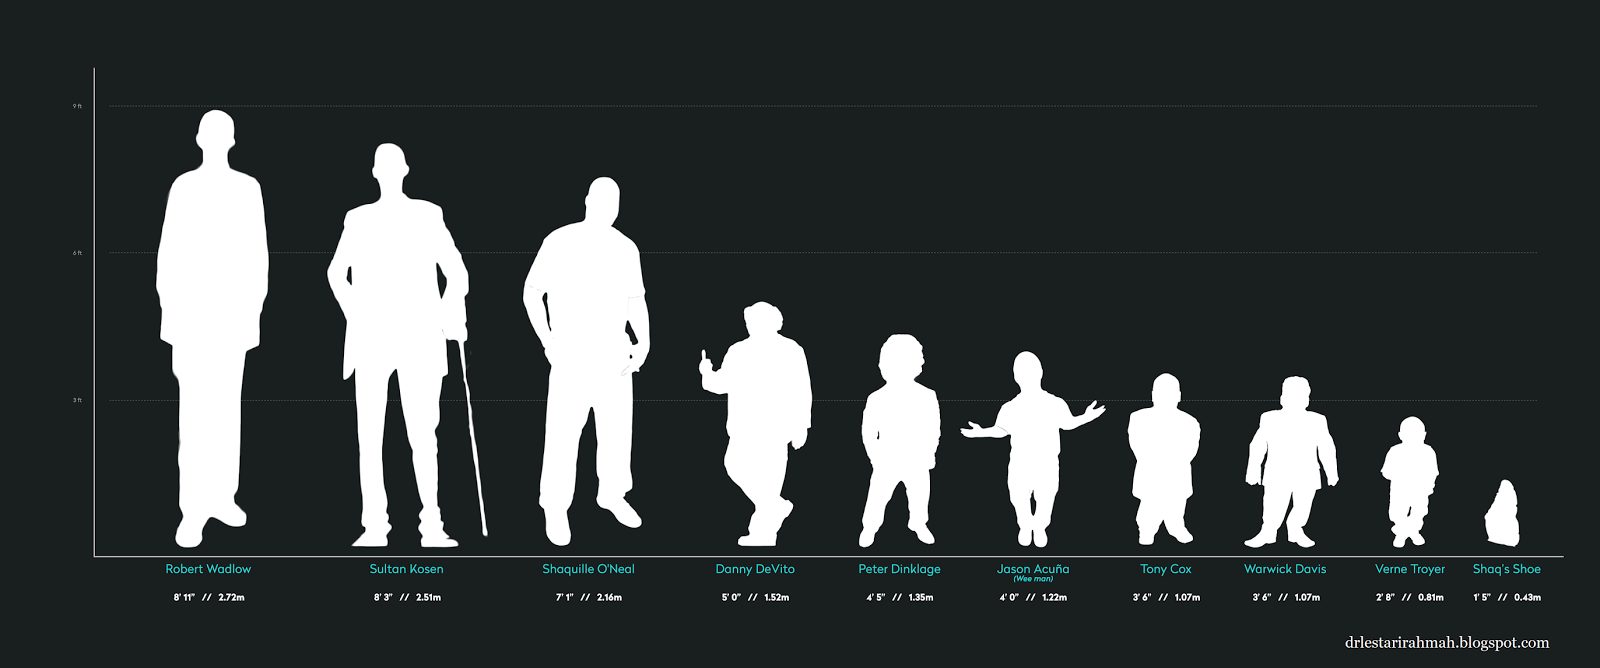 Рост людей сравнение. Рост человека. Сравнения рогсгта человека. Люди по росту. Сравнение роса человека.